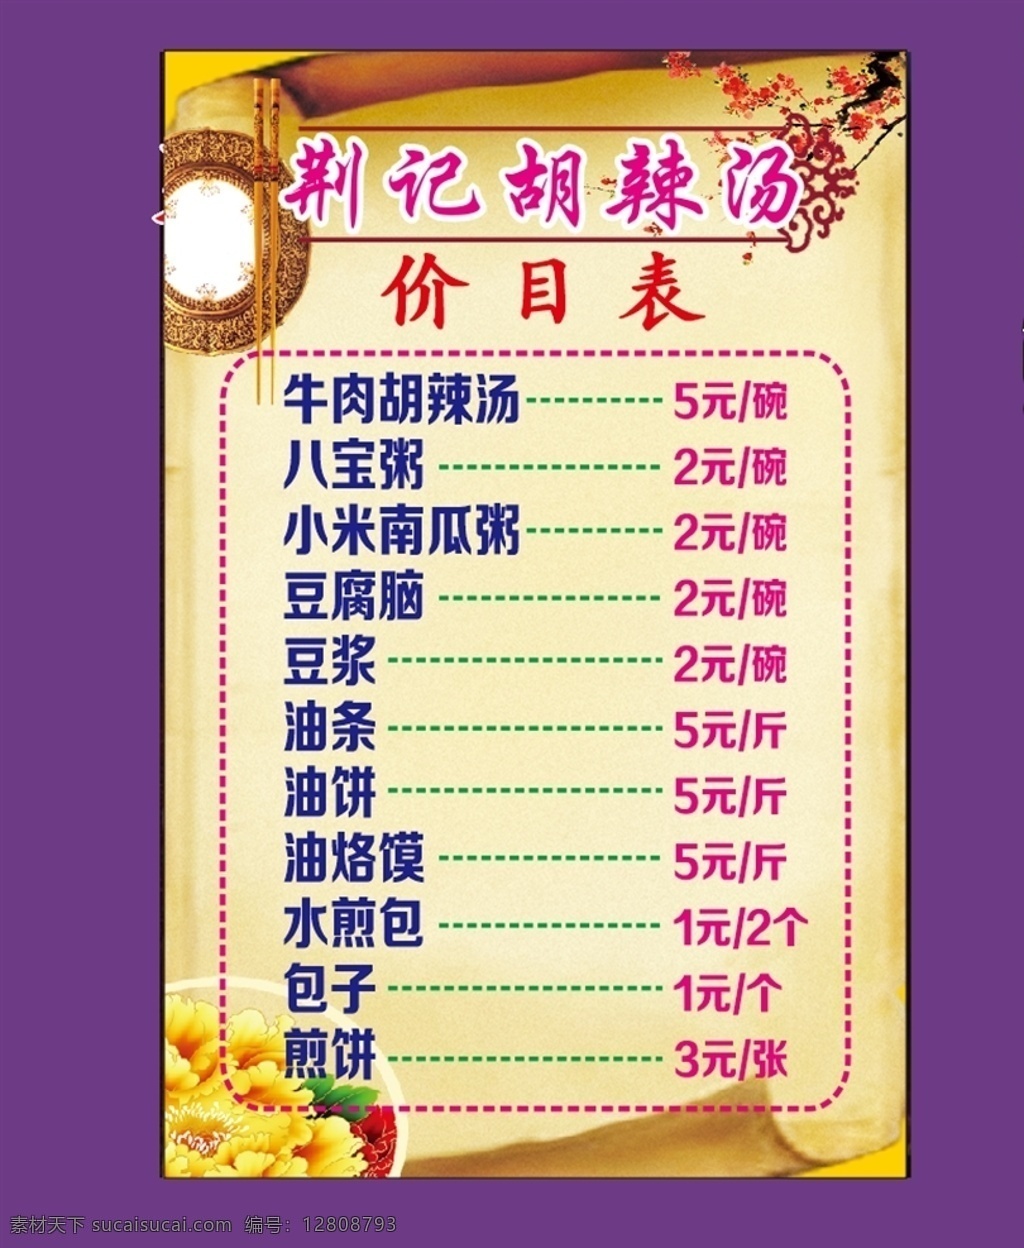 餐厅 灯箱 价目表 餐厅灯箱 米黄背景 梅花素材 碗筷素材 食品宣传广告